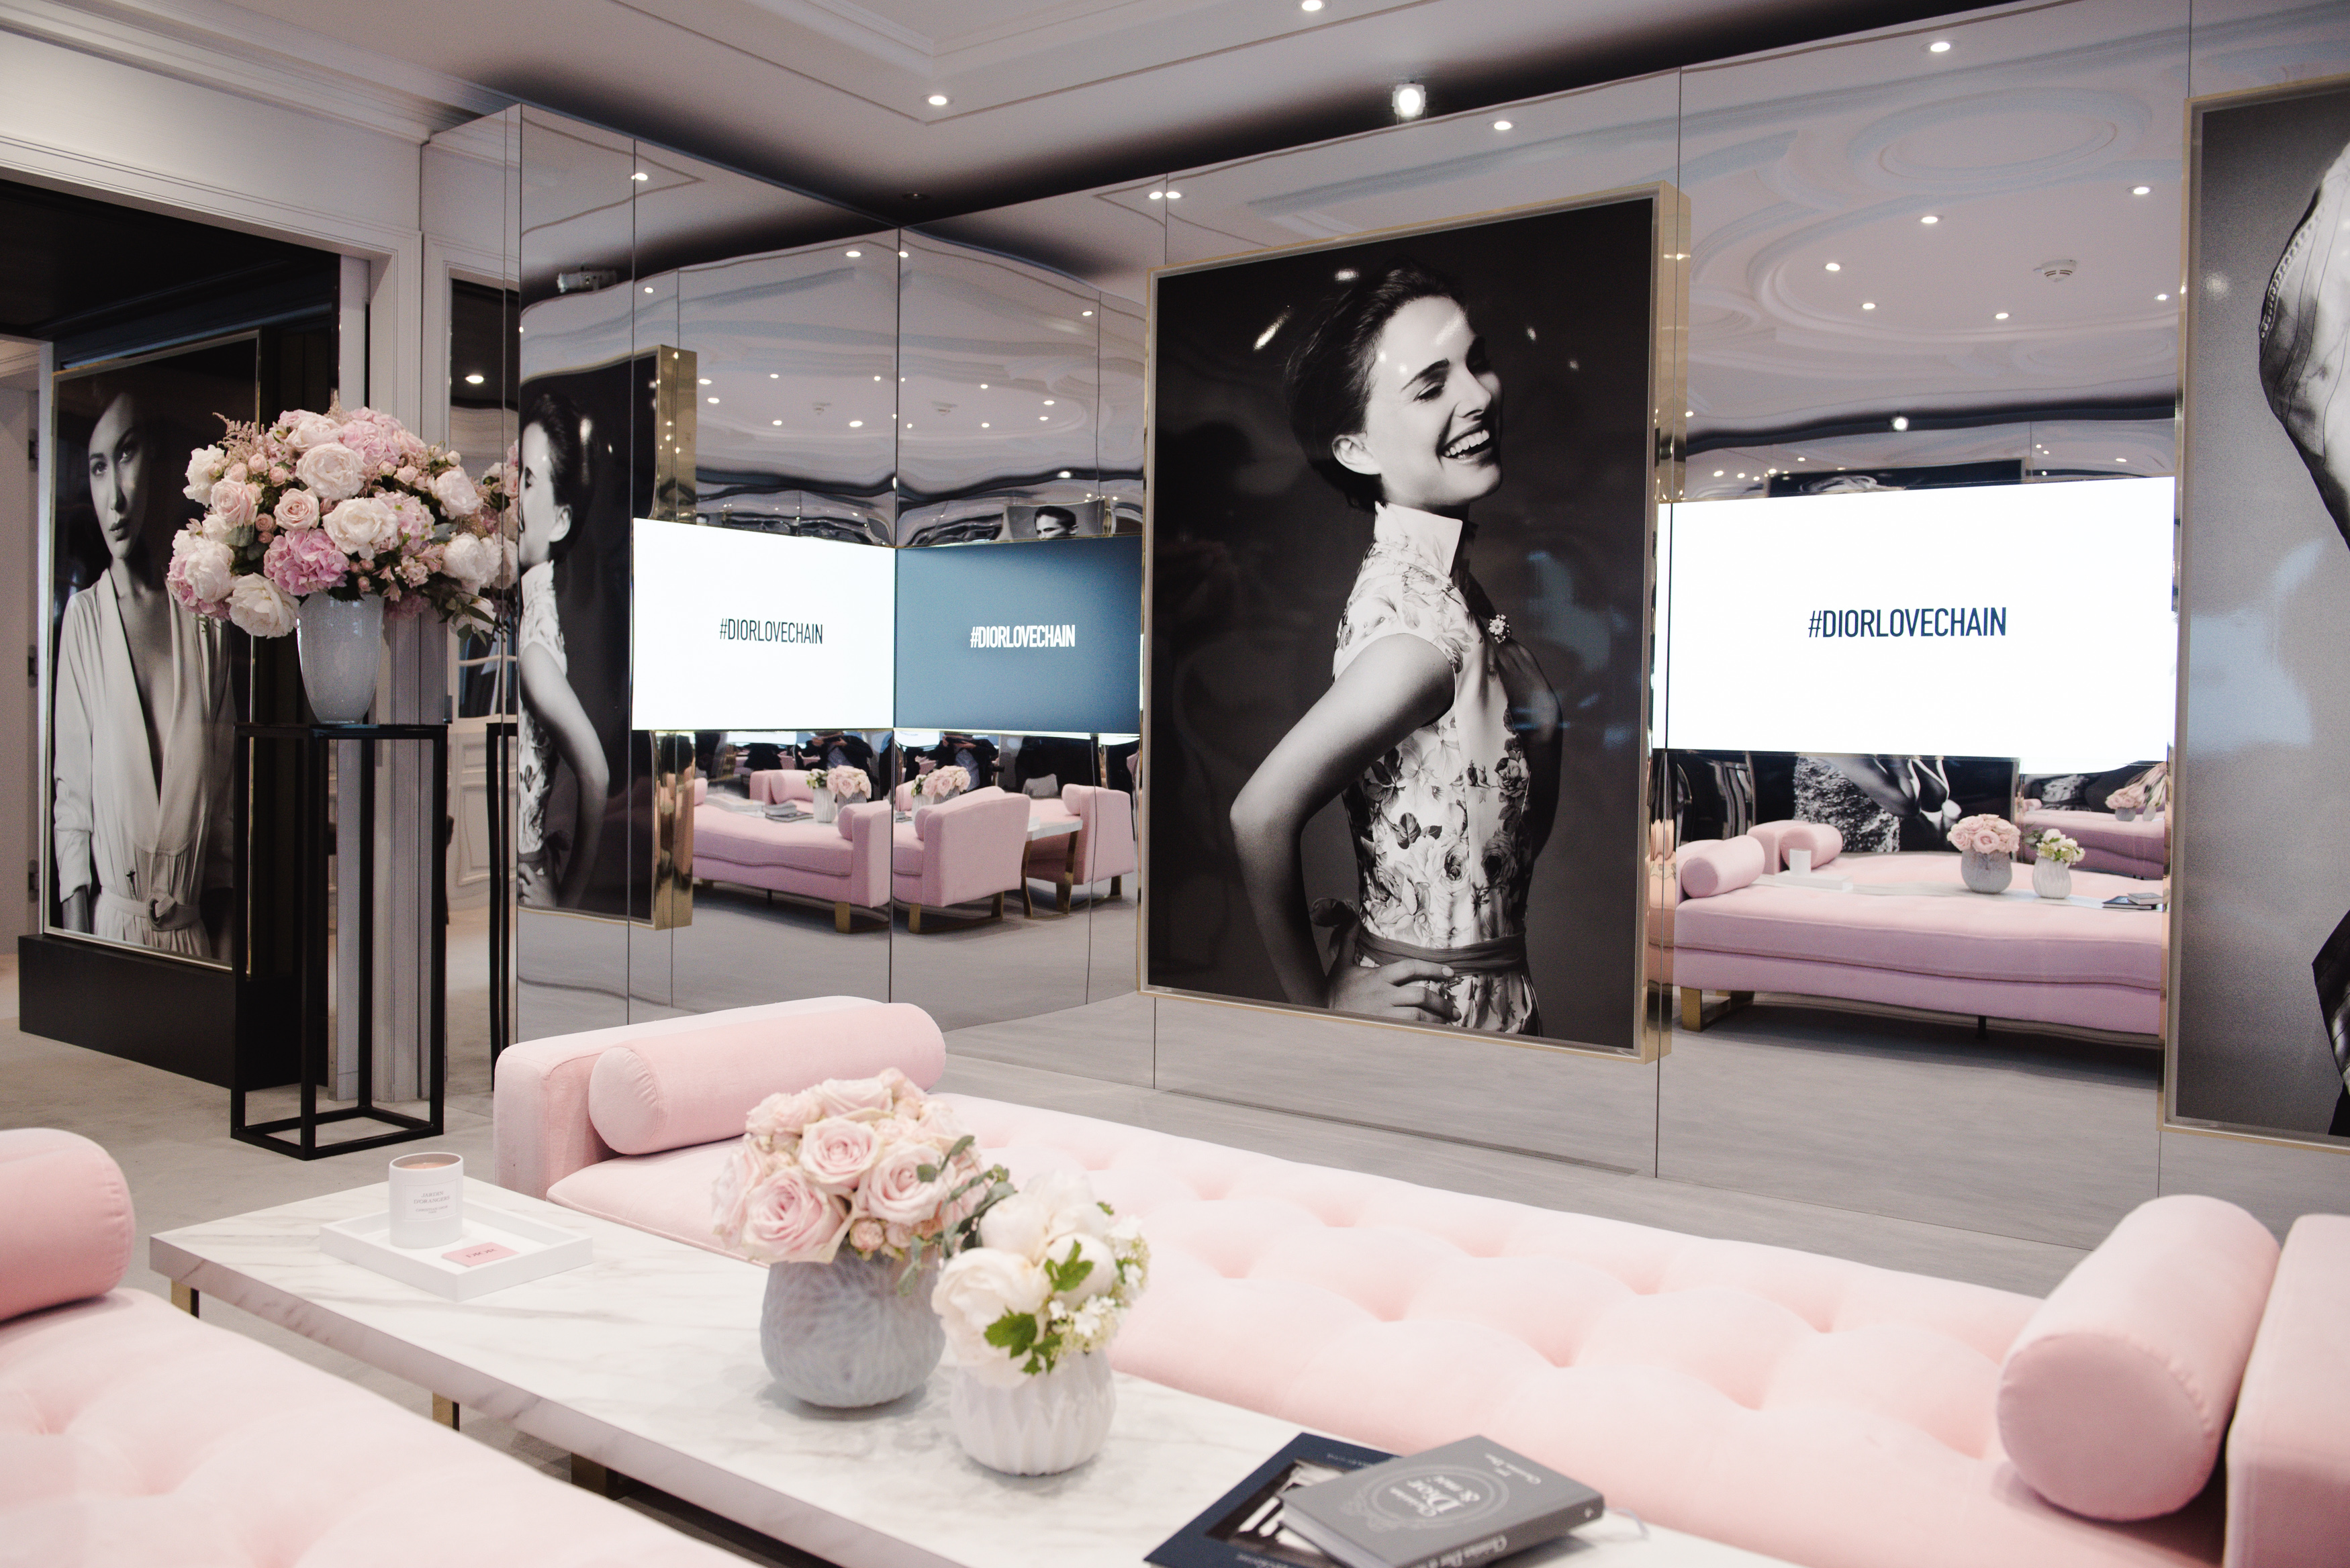 Σε ξεναγούμε στη σουίτα Dior όπου γίνεται το μακιγιάζ των διασήμων στις Κάννες!